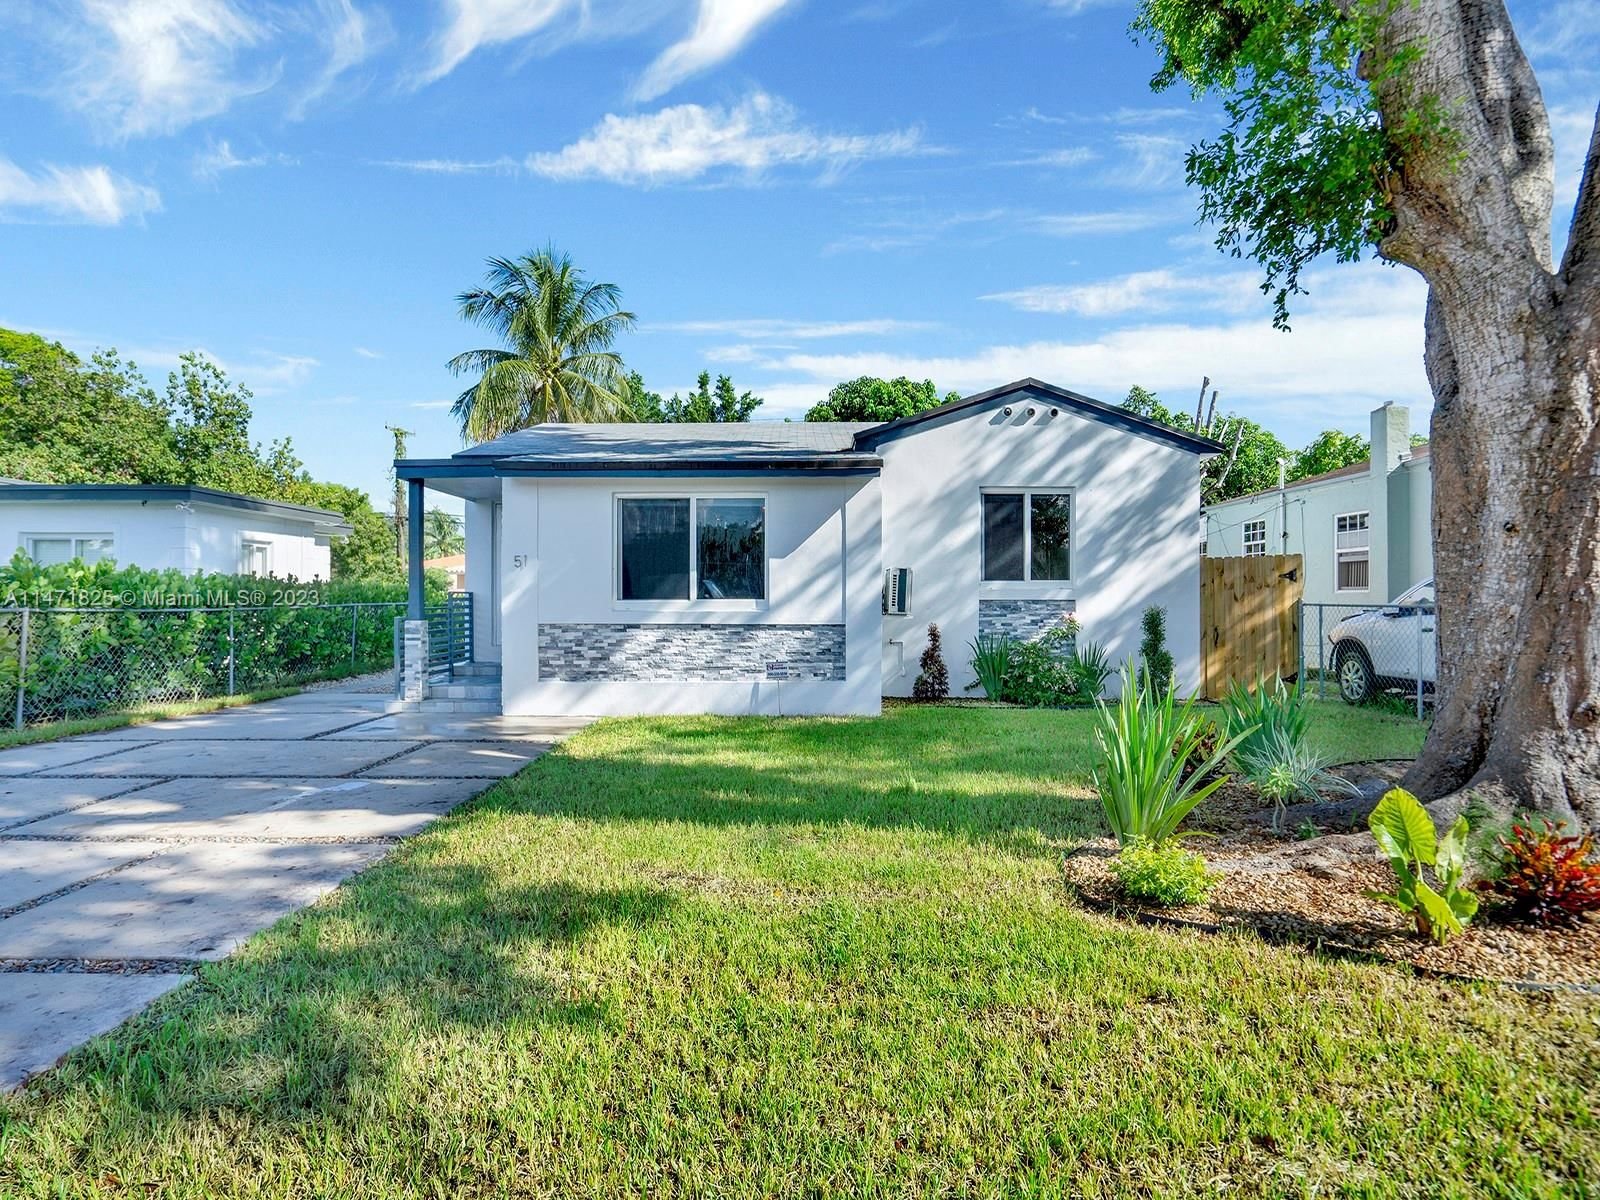 Real estate property located at 51 115th St, Miami-Dade County, LA PALOMA, Miami, FL